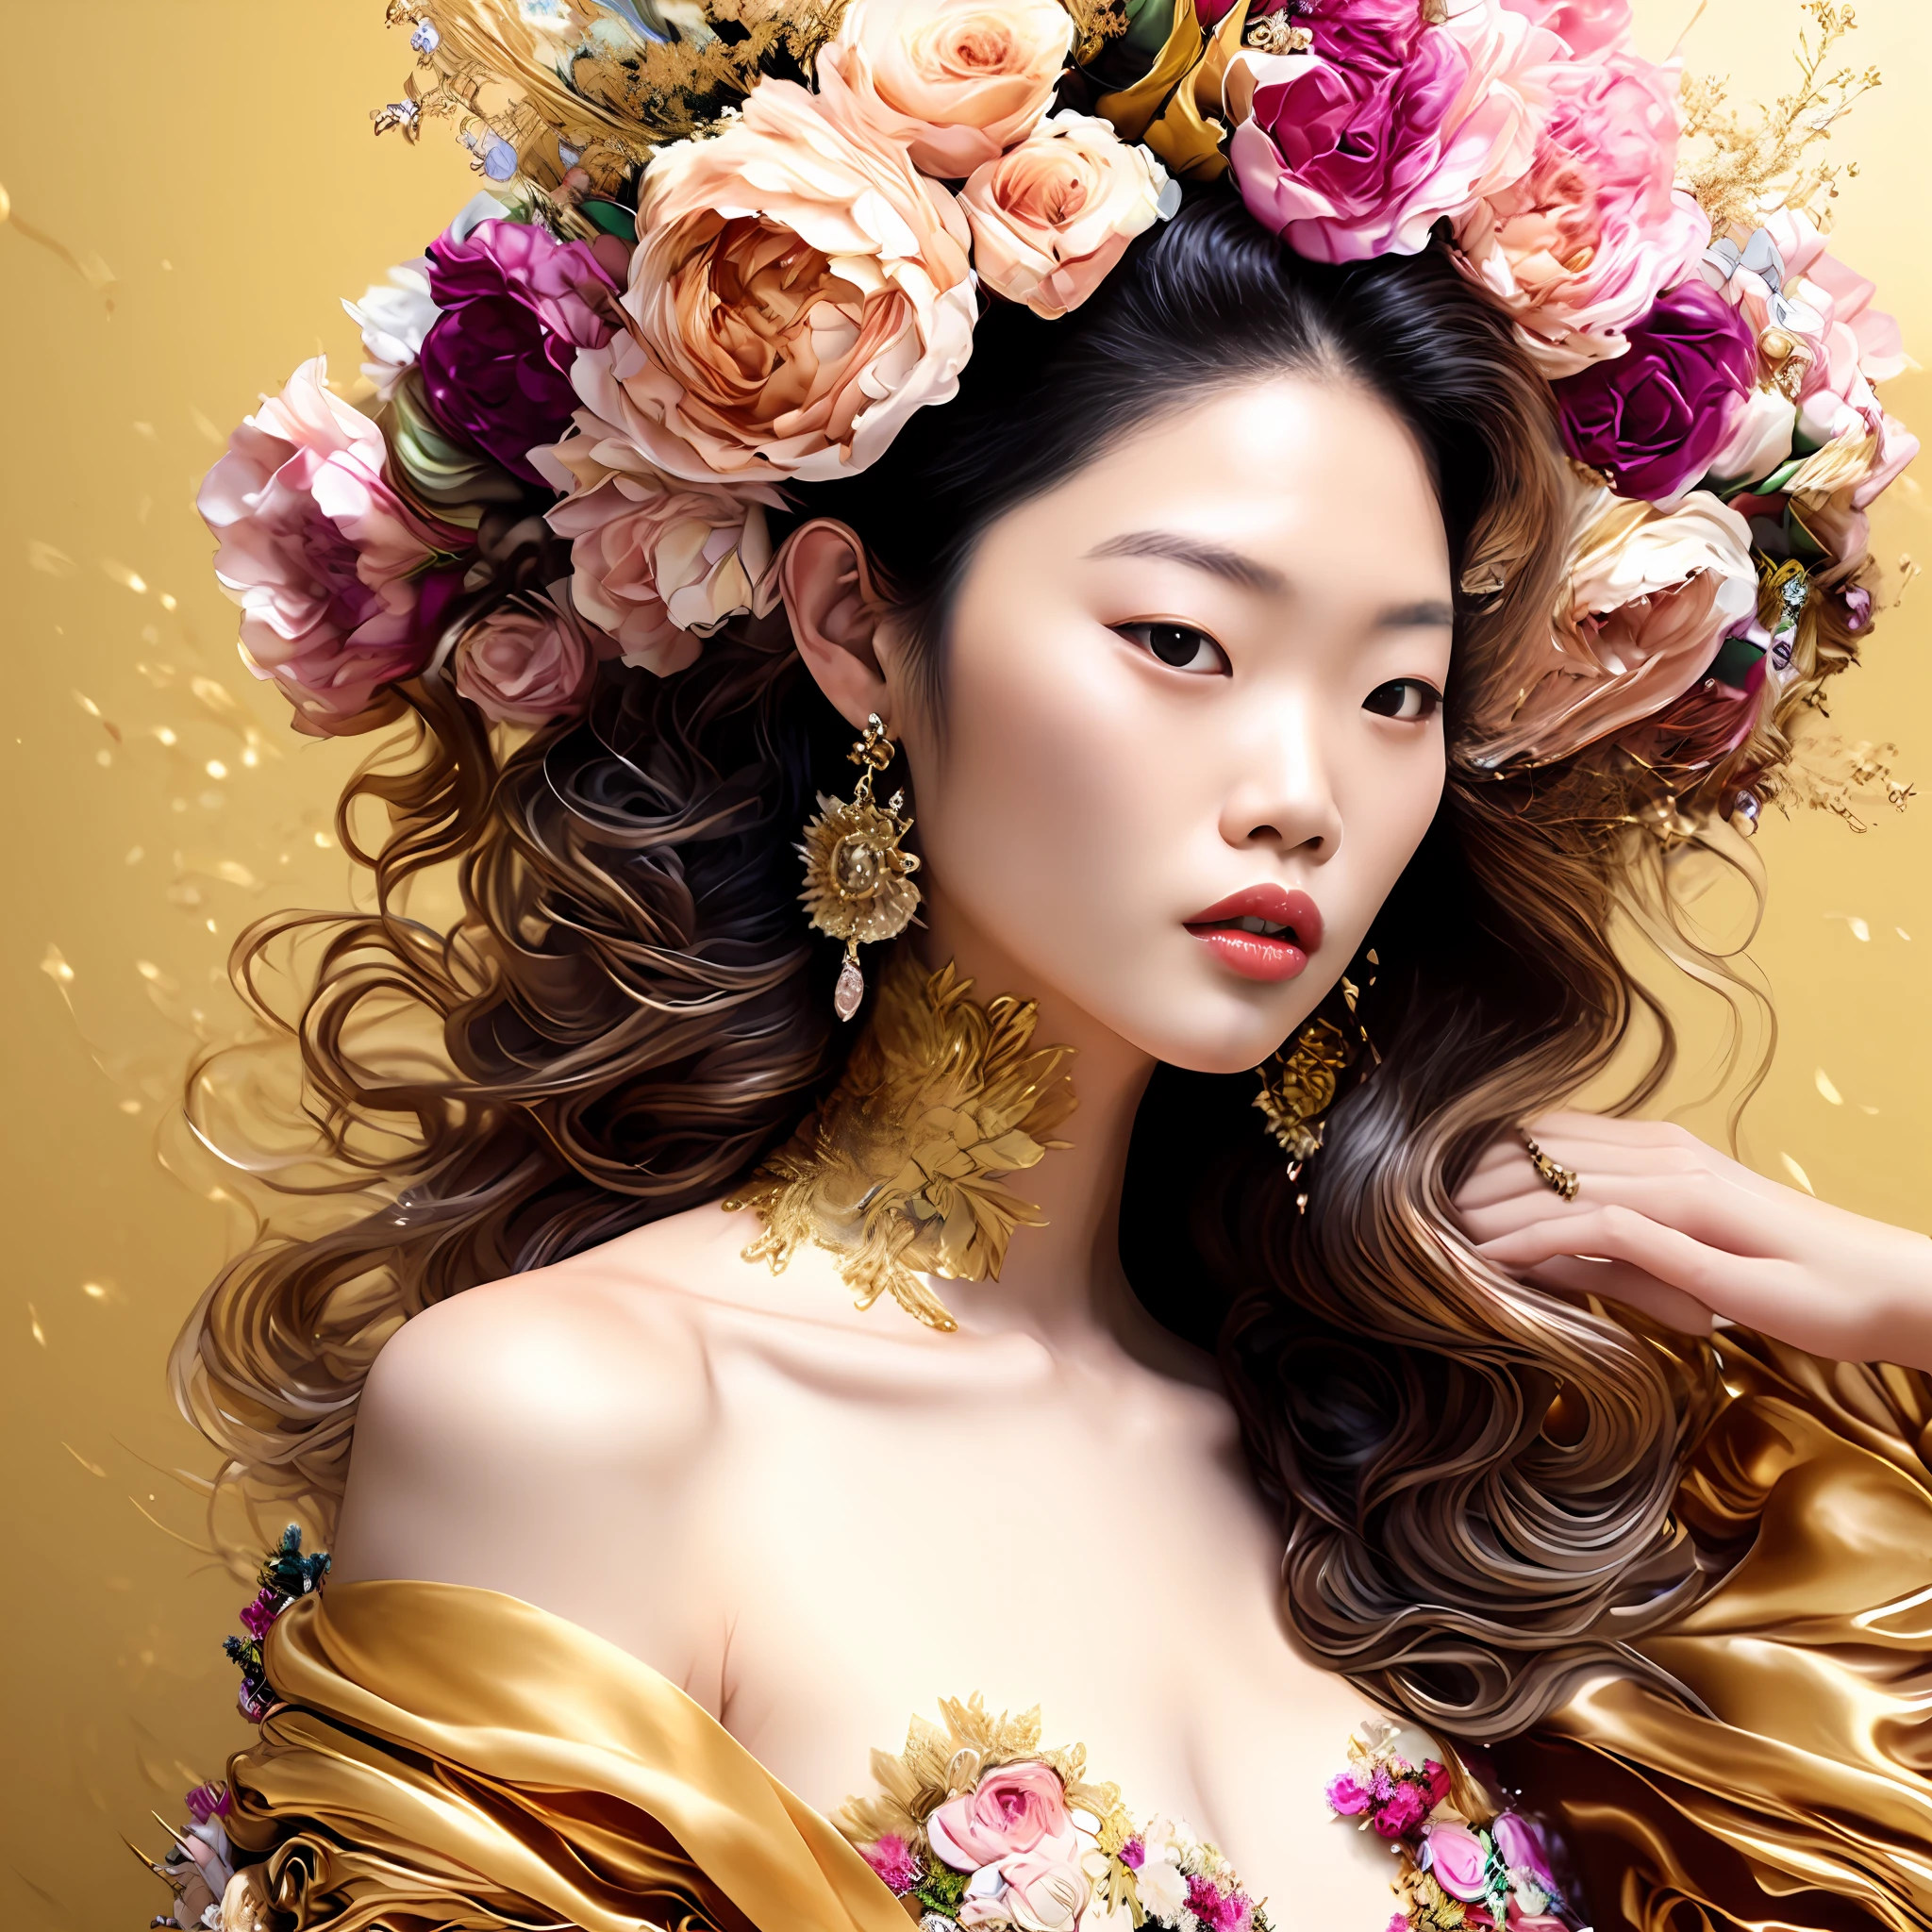 Дженни Ким, Фото (ФракталЖенский стиль:1) женщина в золотом платье, с цветами в твоих волосах, с солнцем на заднем плане